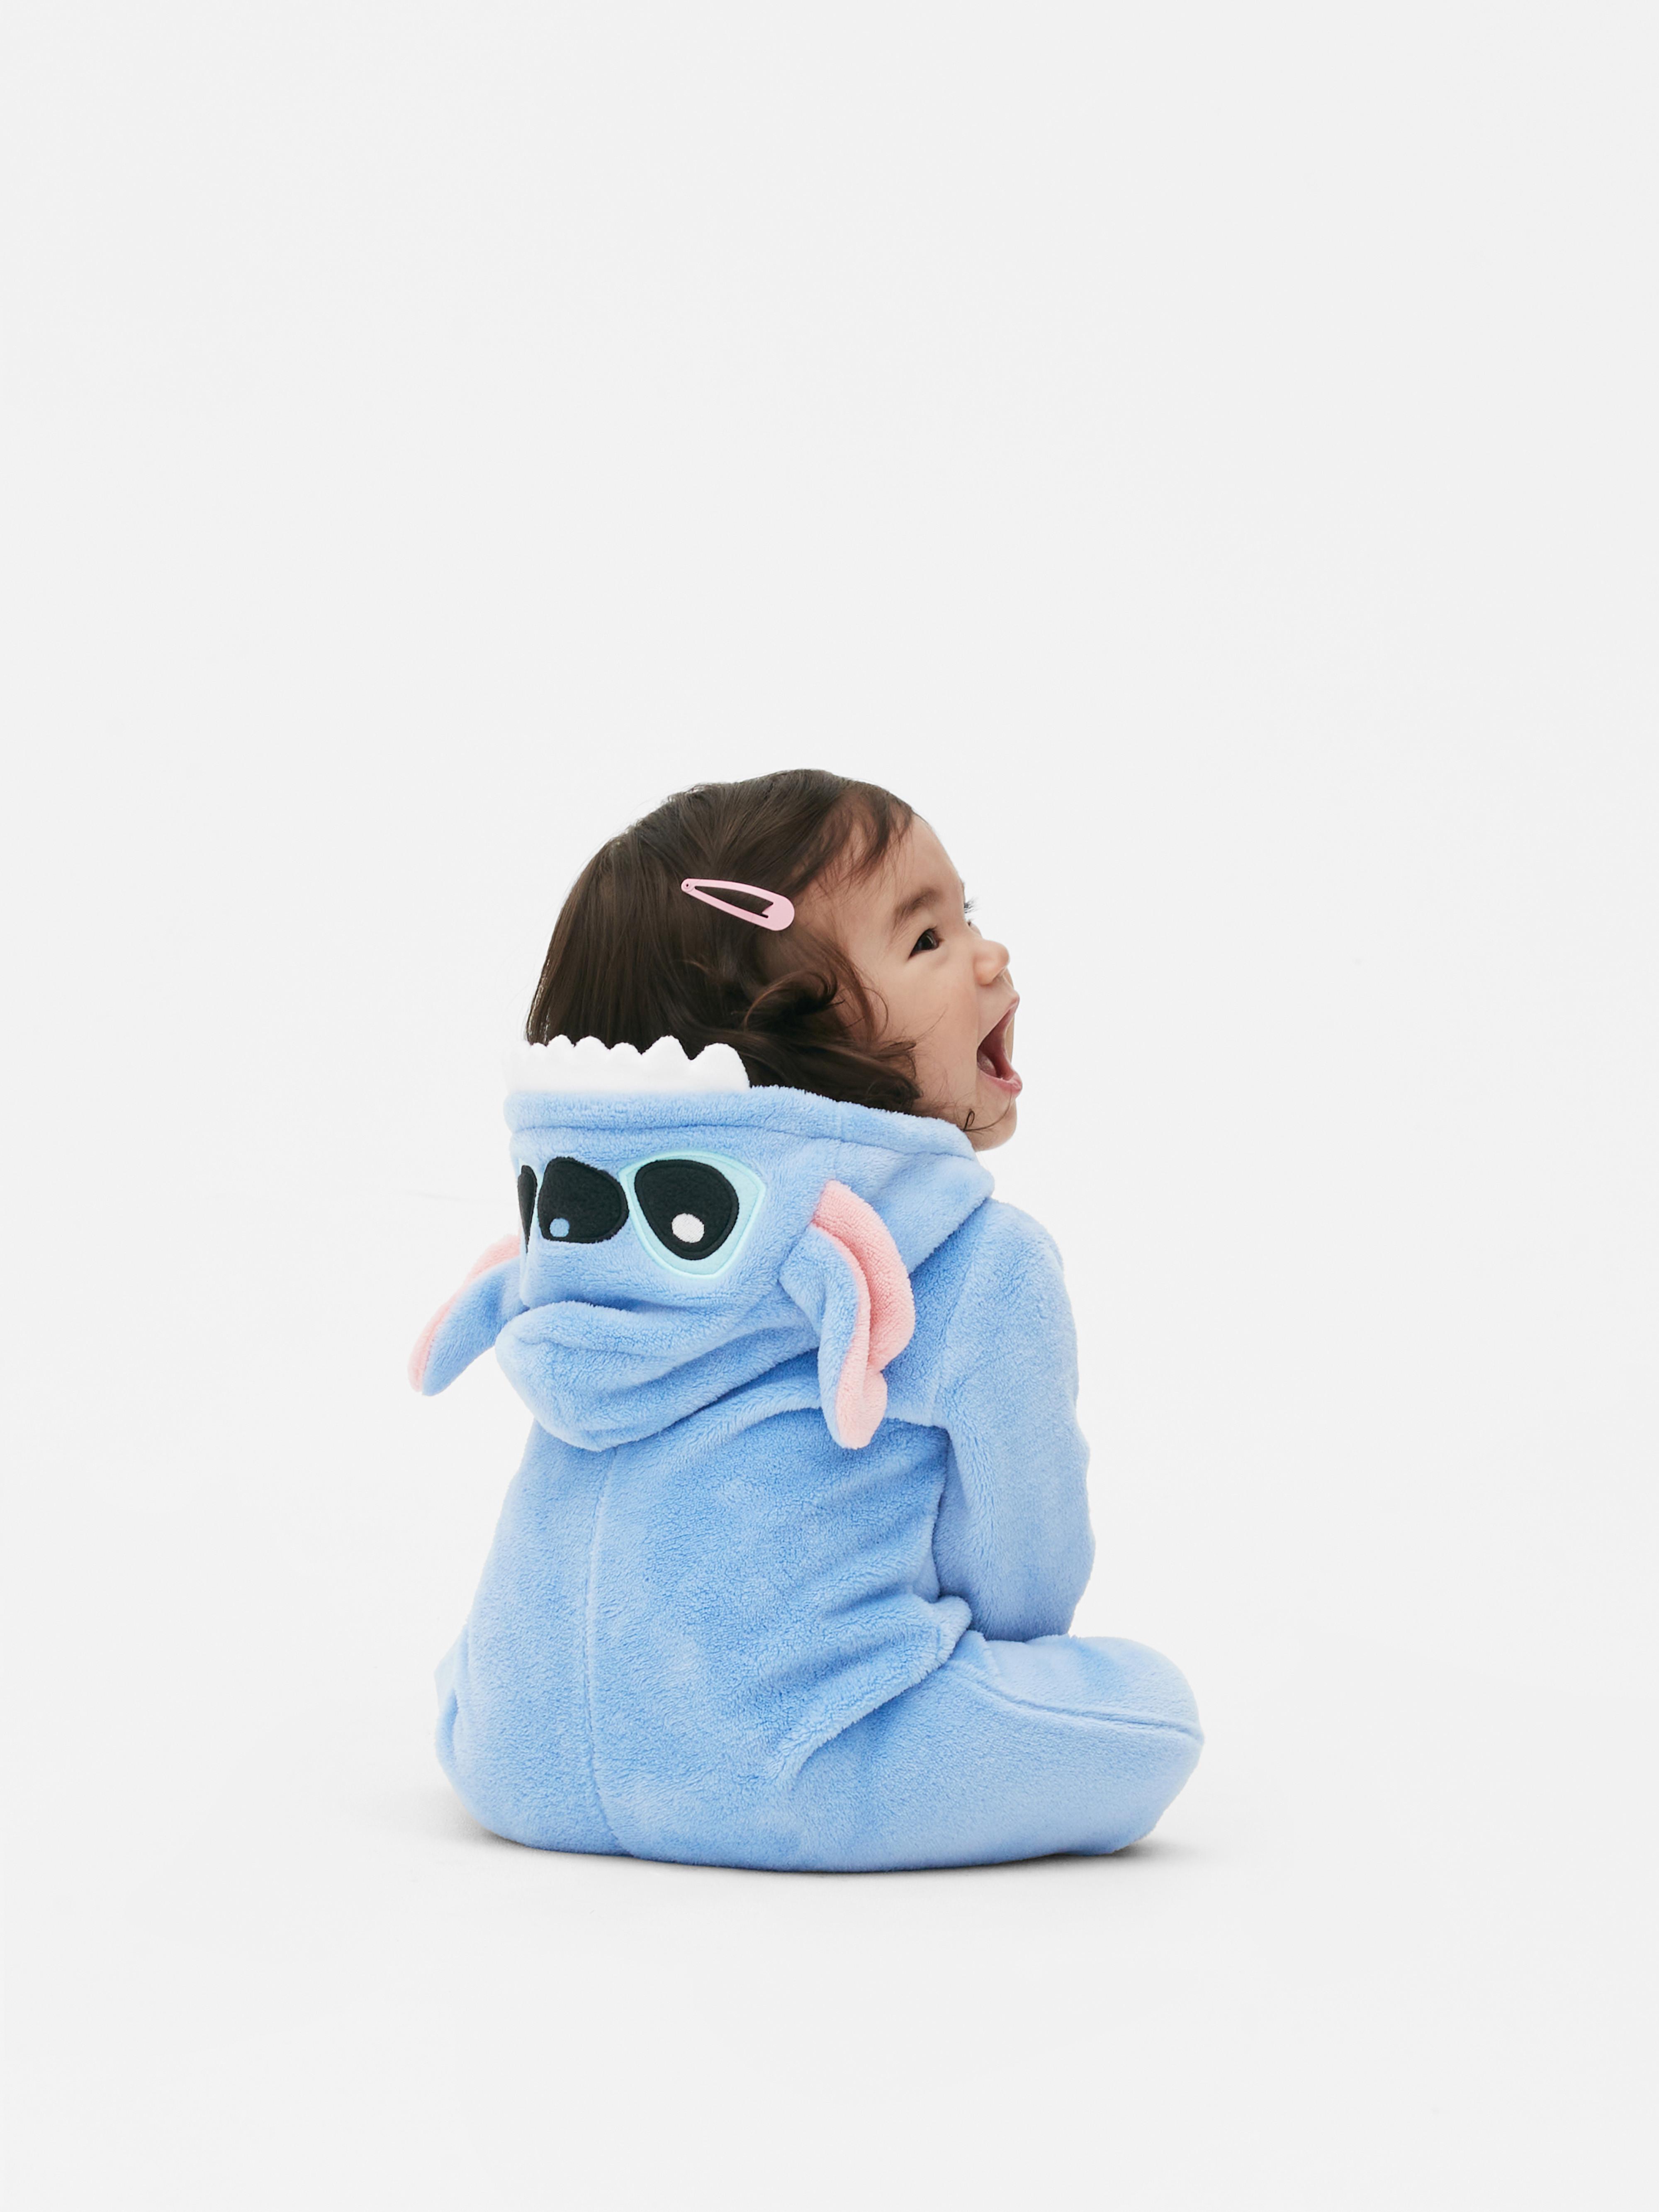 Pijama de invierno de Lilo Stitch para adultos y niños, ropa de dormir con  capucha, de